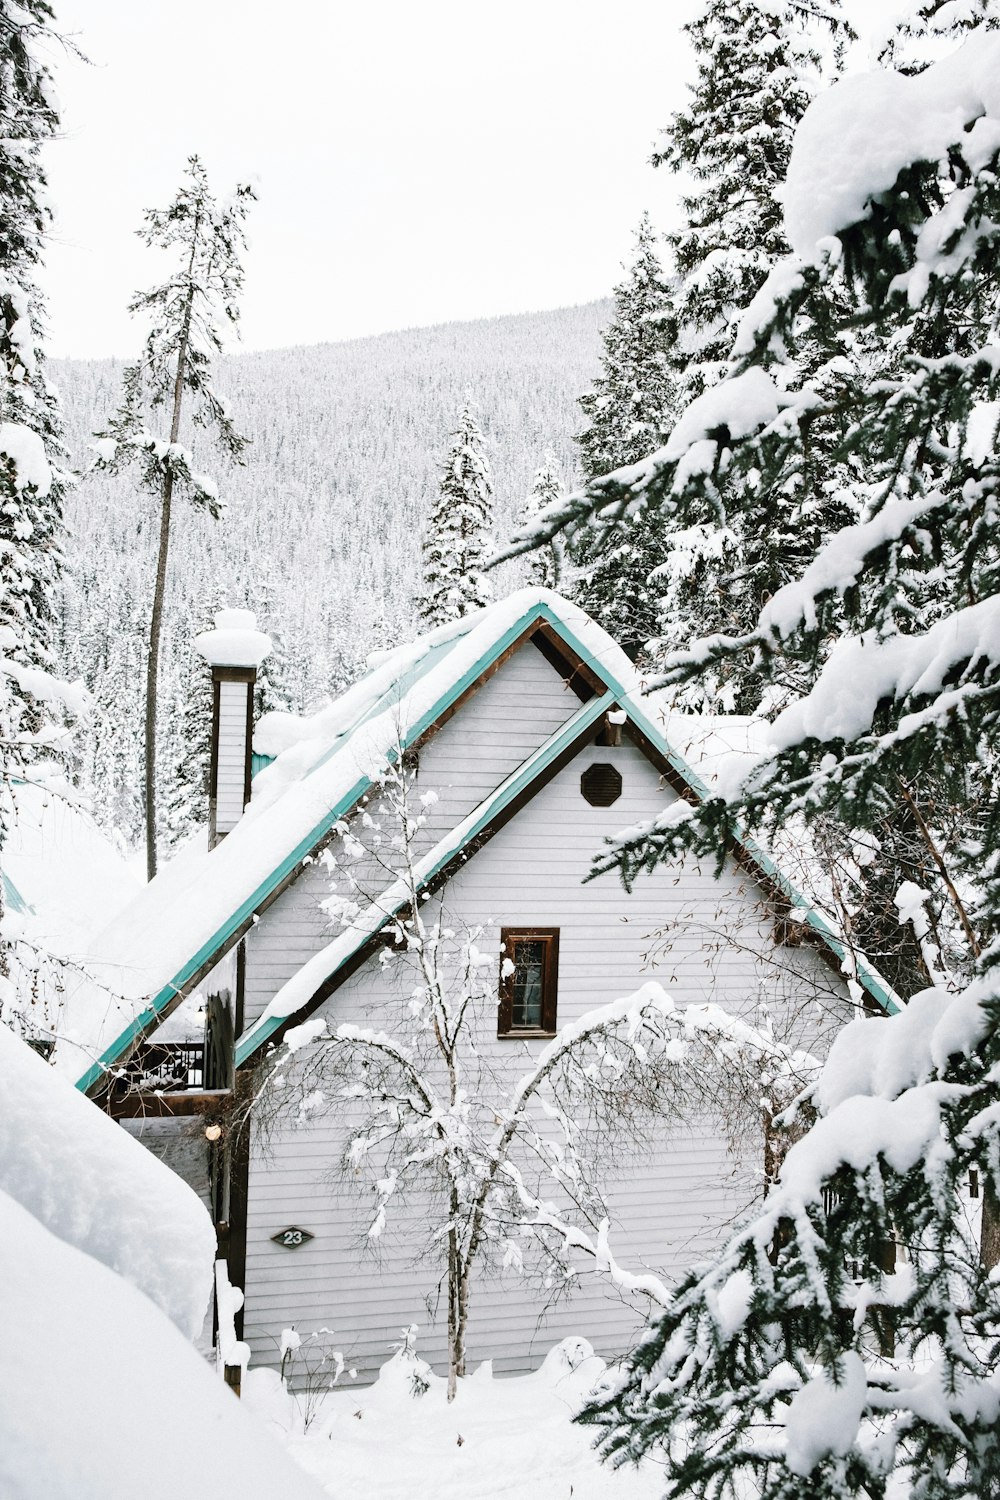 Casa de madeira branca perto de árvores cobertas de neve